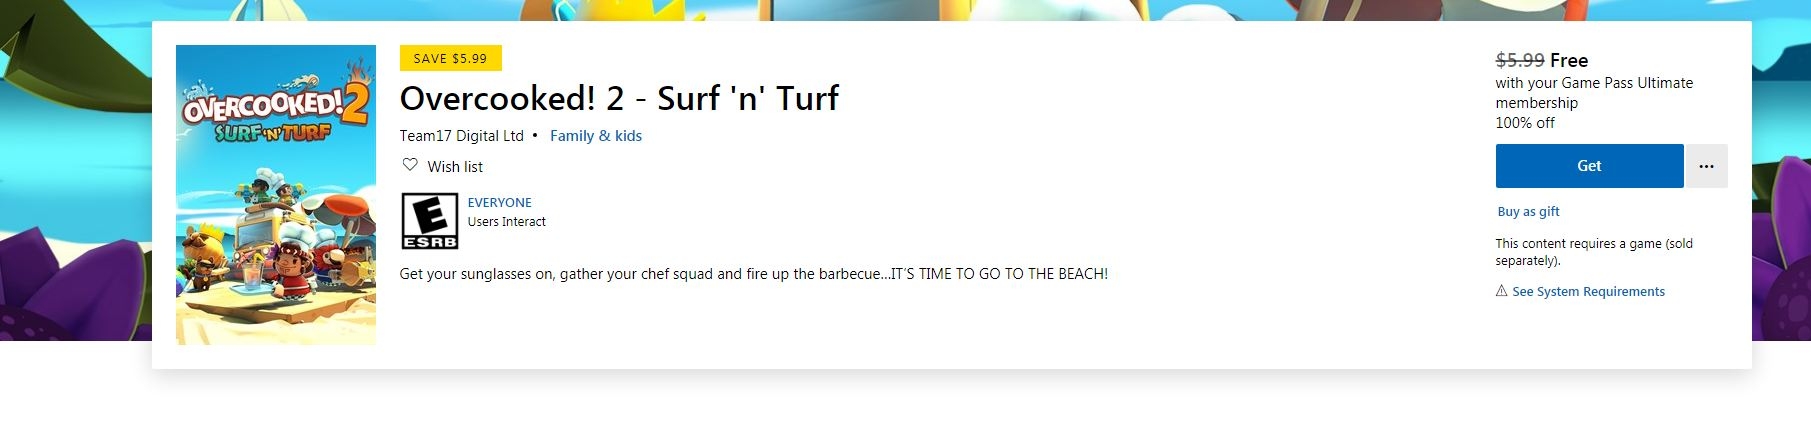 订阅XGPU的用户可限时免费领取《胡闹厨房2》DLC - Surf 'n' Turf